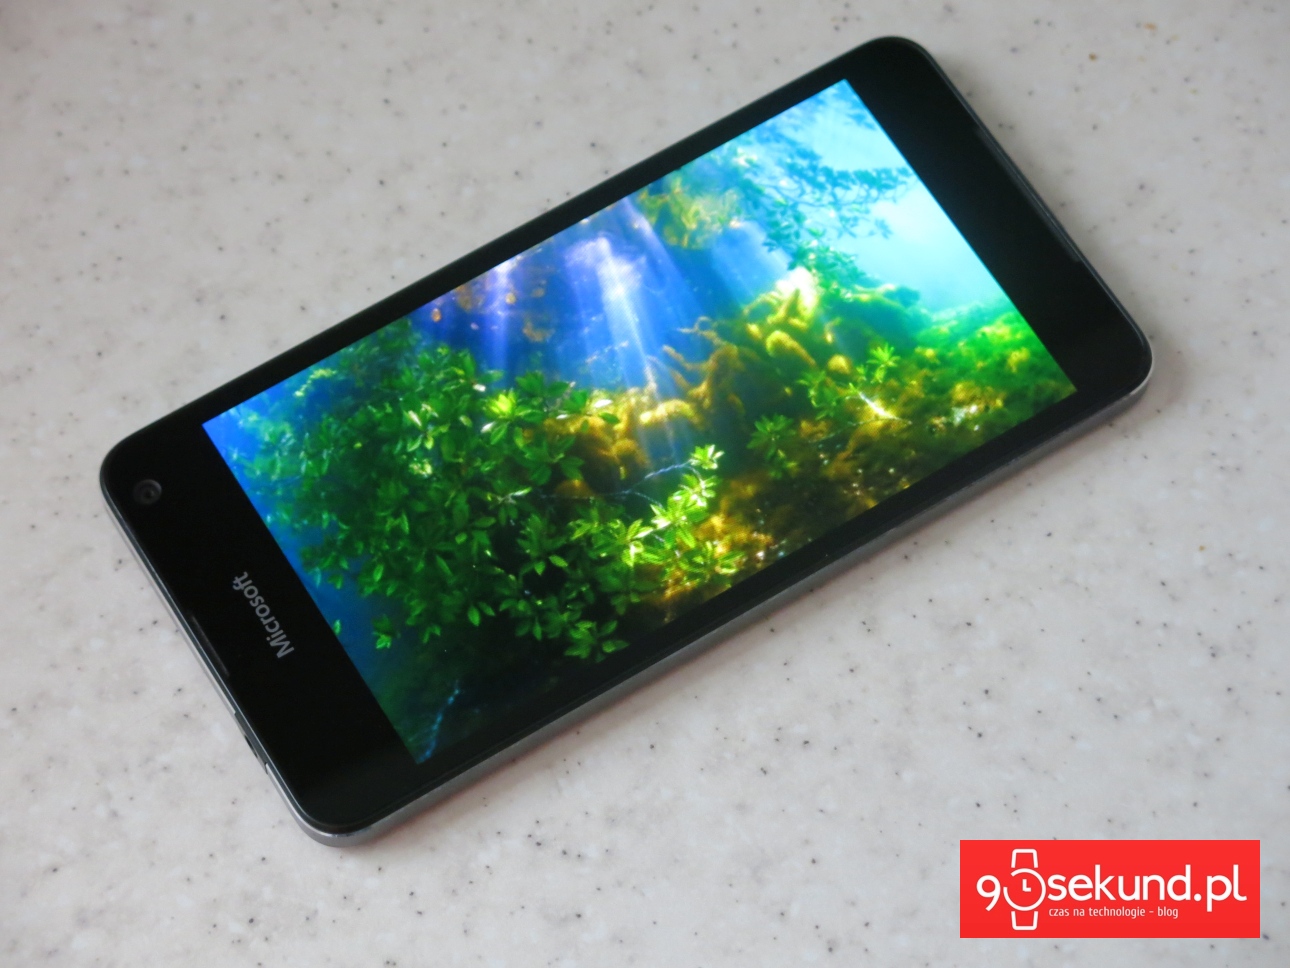 Картинка великолепная, цвета идеально насыщенные, черный - глубокий, яркость очень высокая, поэтому даже в солнечные дни у Lumia 650 нет проблем с отображением читаемого контента